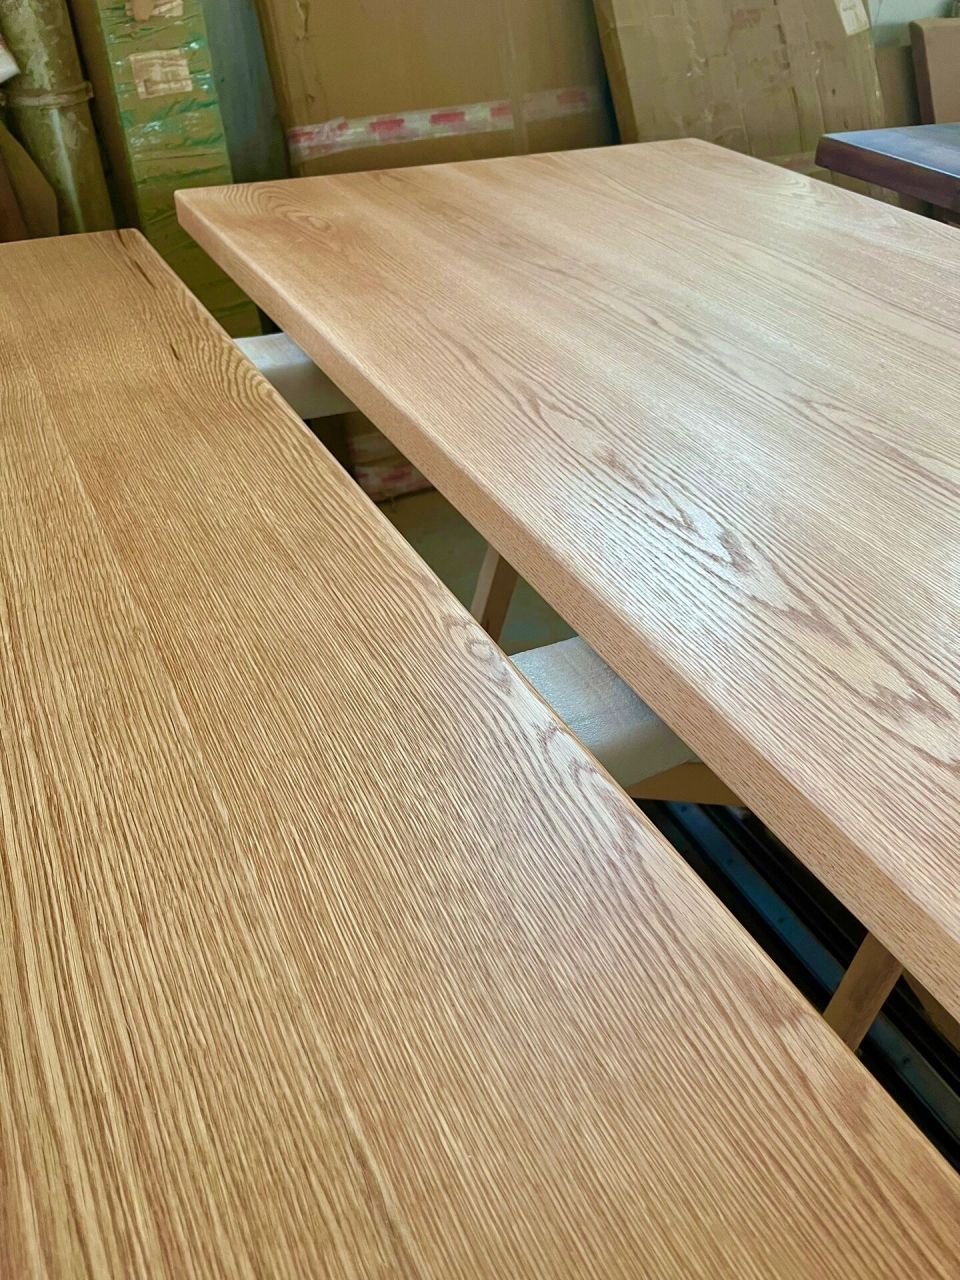 不论是配铁艺腿,亚克力腿,升降腿, 还是加工实木整桌都93 红白橡木